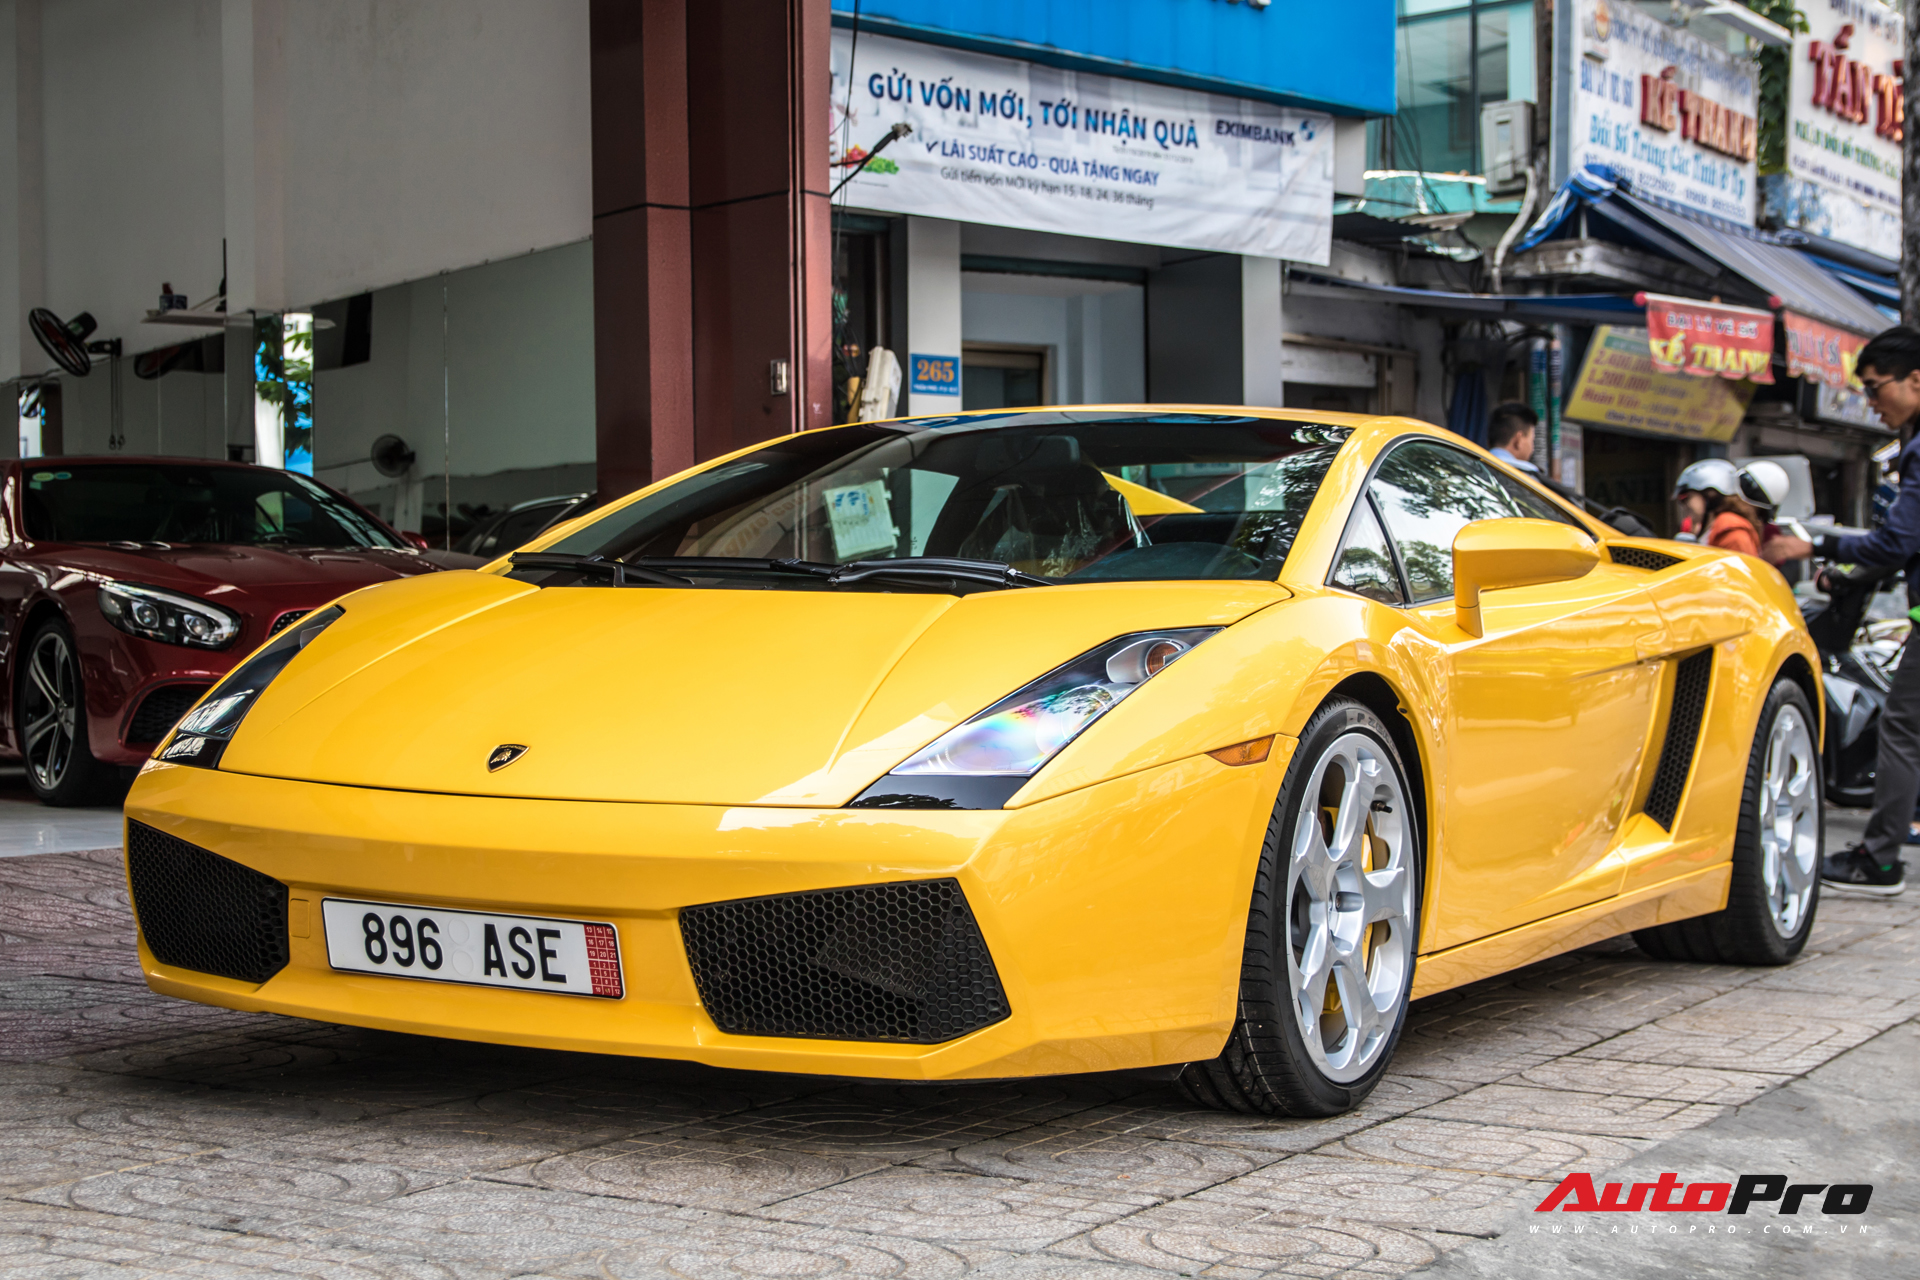 Lamborghini Gallardo từng gắn liền với tên tuổi Cường Đô-la bất ngờ xuất hiện trên phố Sài Gòn - Ảnh 1.